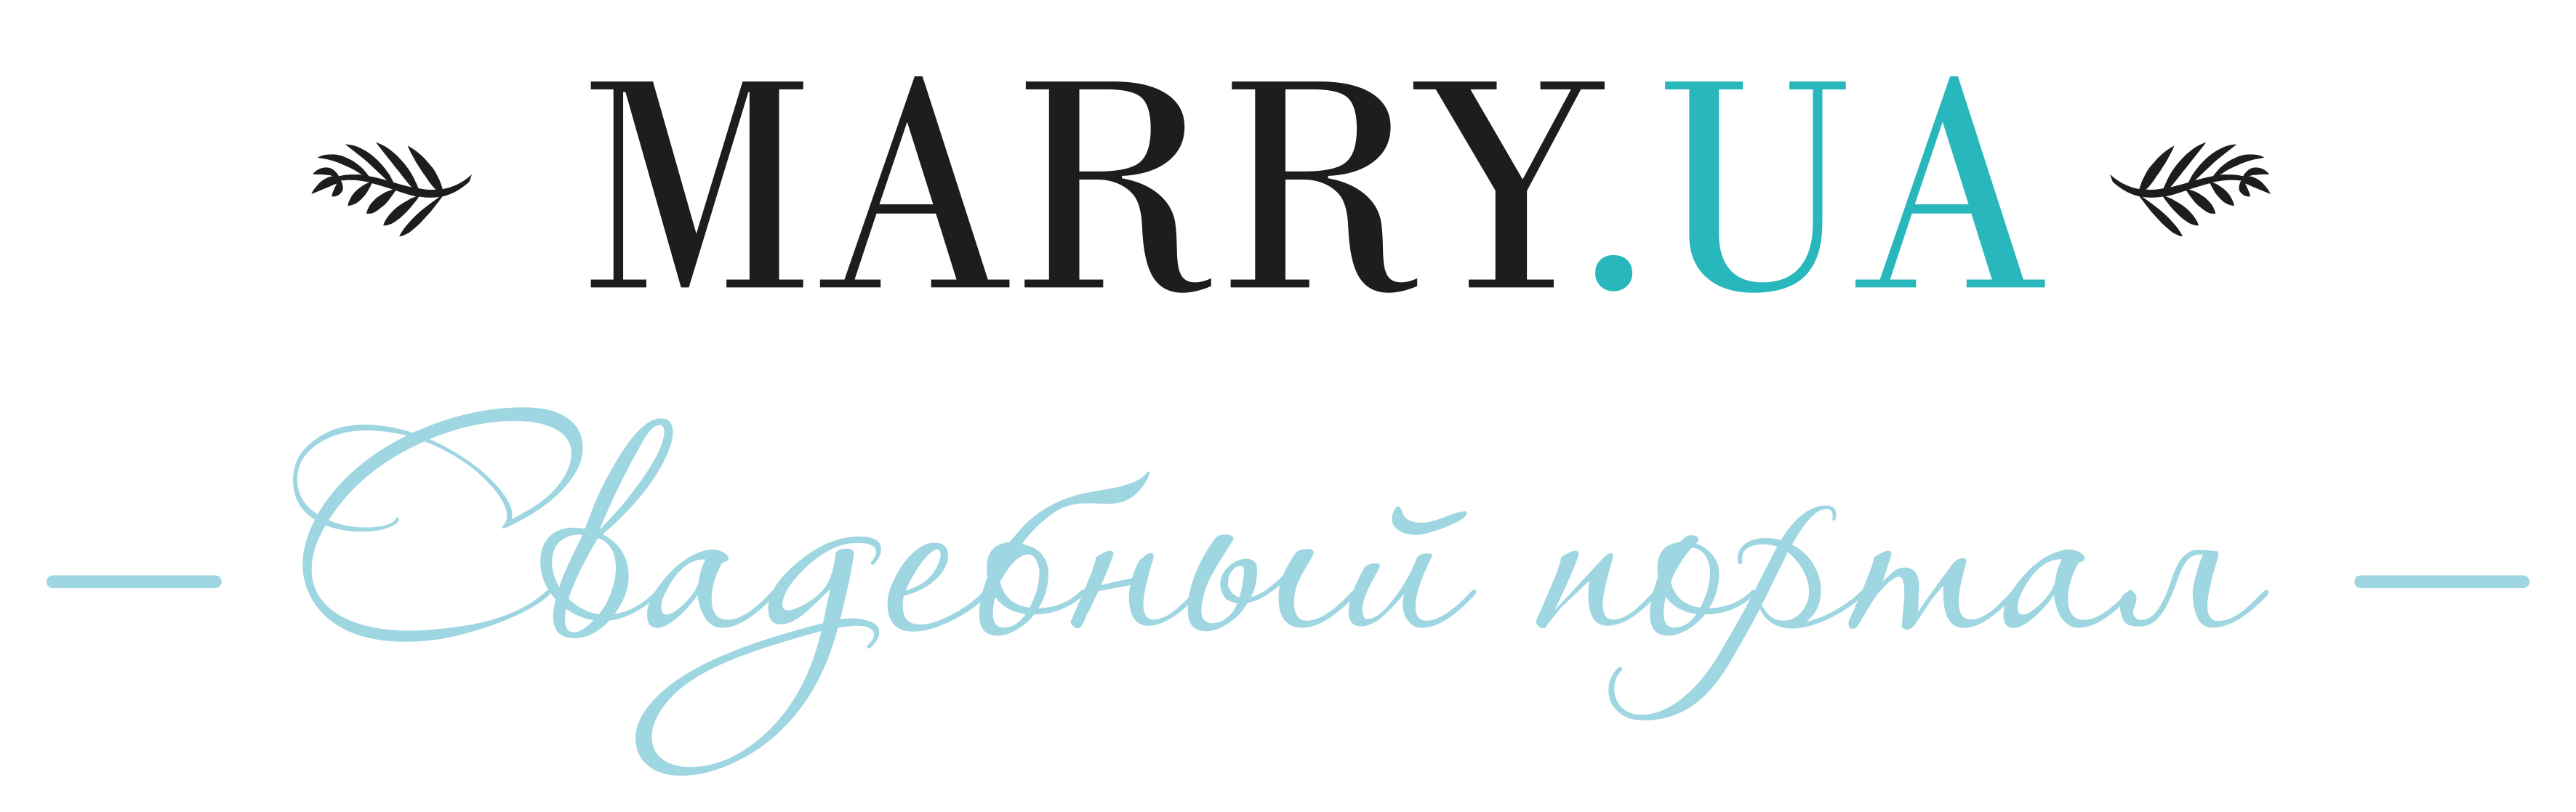 Marry-ua_logo